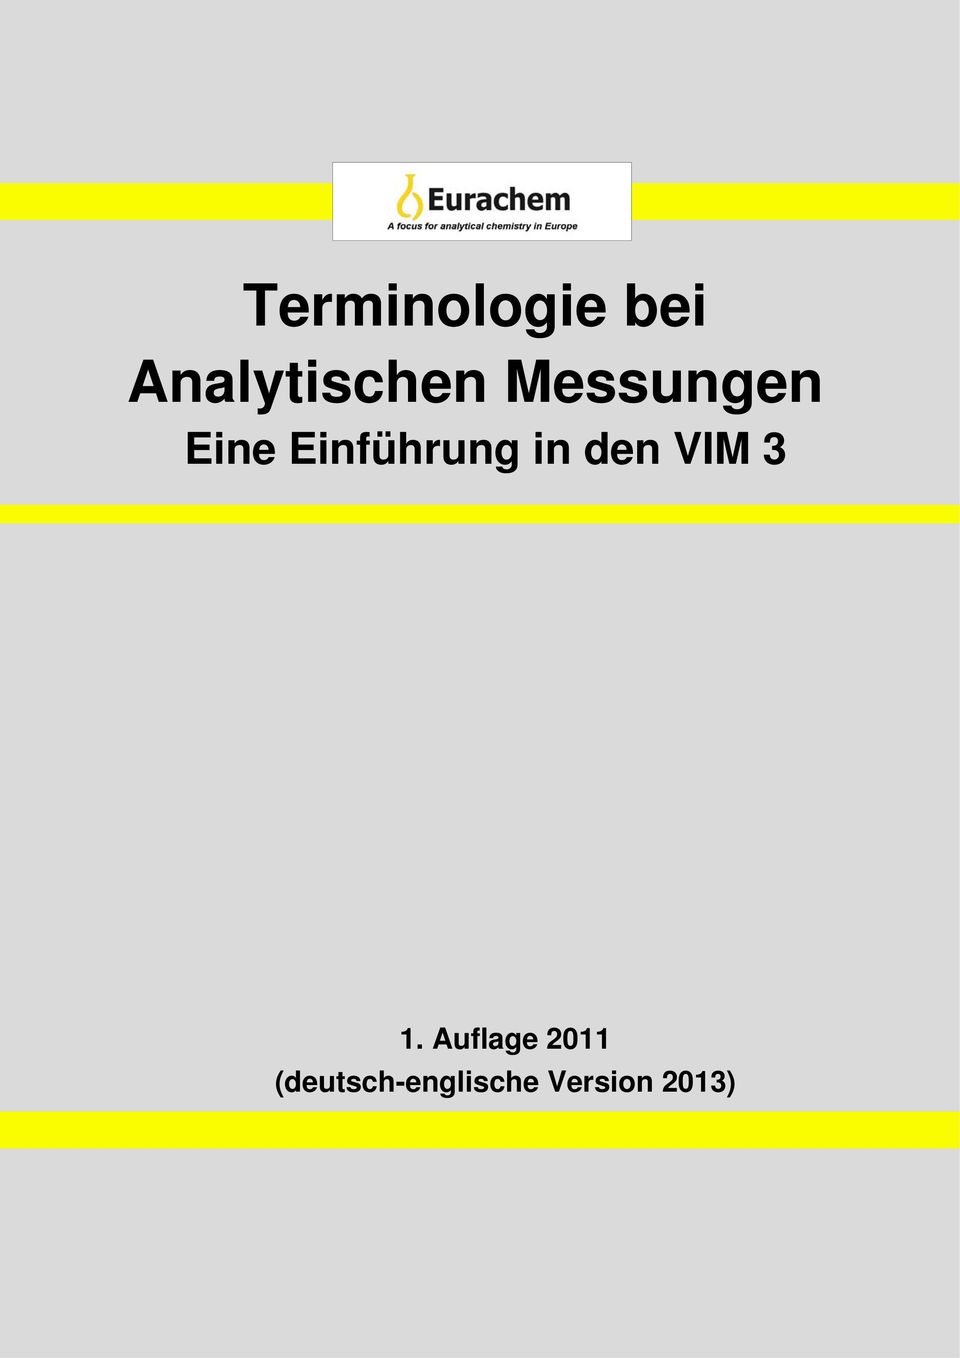 Introduction Einführung to in VIM den 3VIM 3 1.